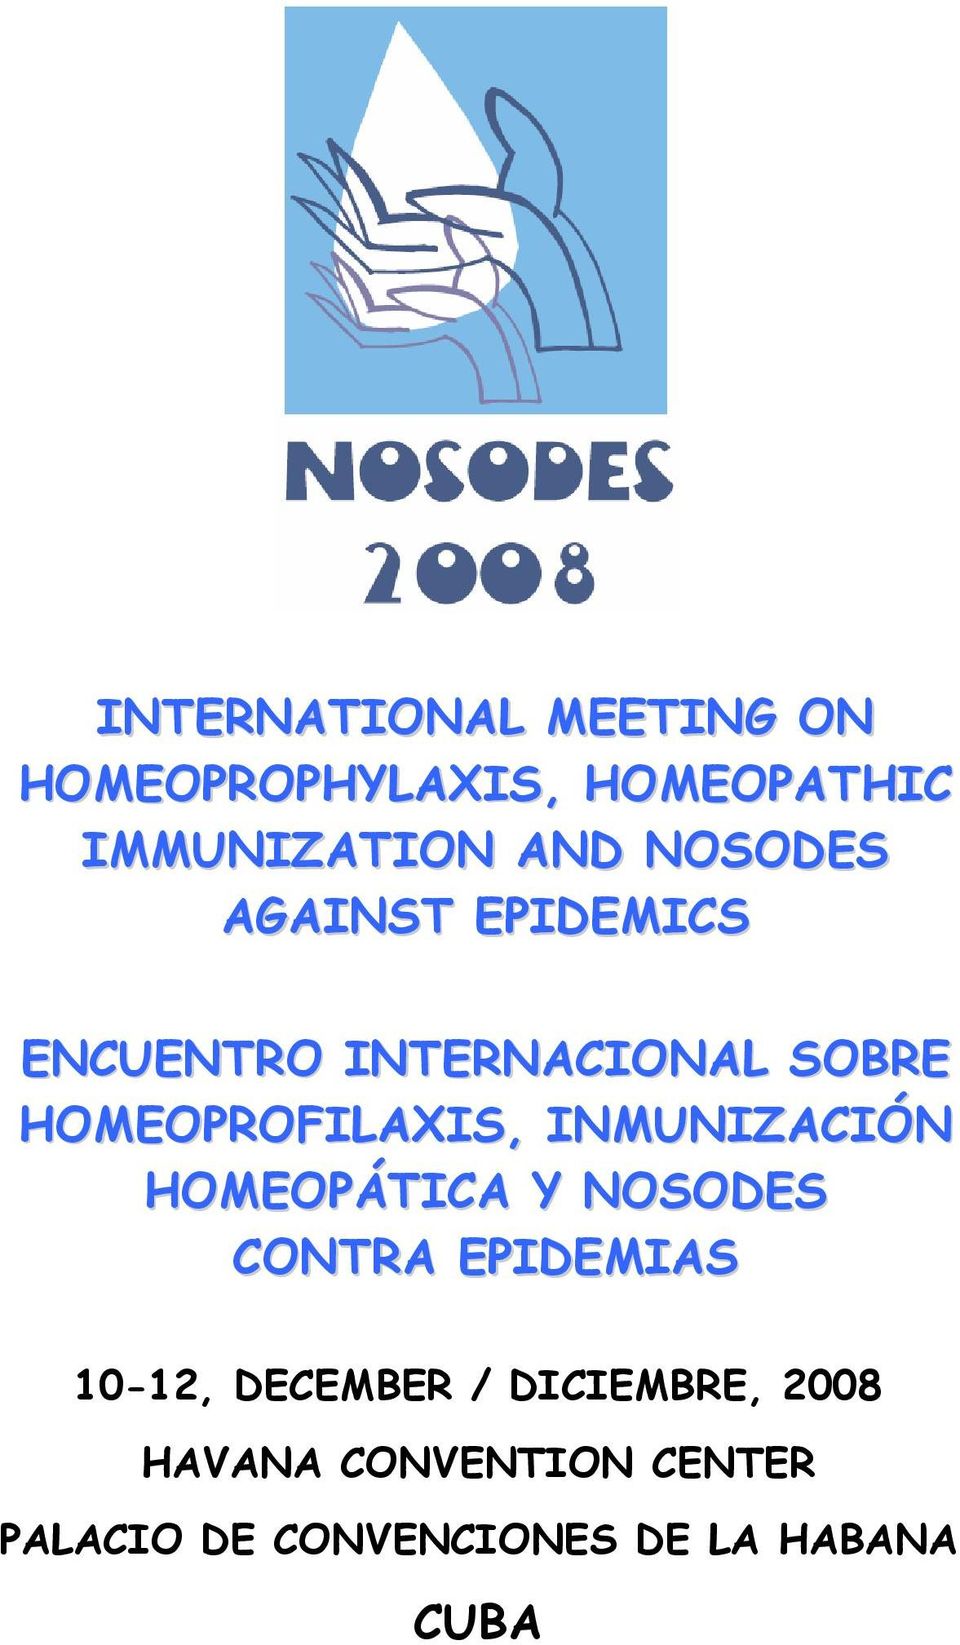 INMUNIZACIÓN HOMEOPÁTICA Y NOSODES CONTRA EPIDEMIAS 10-12, DECEMBER /